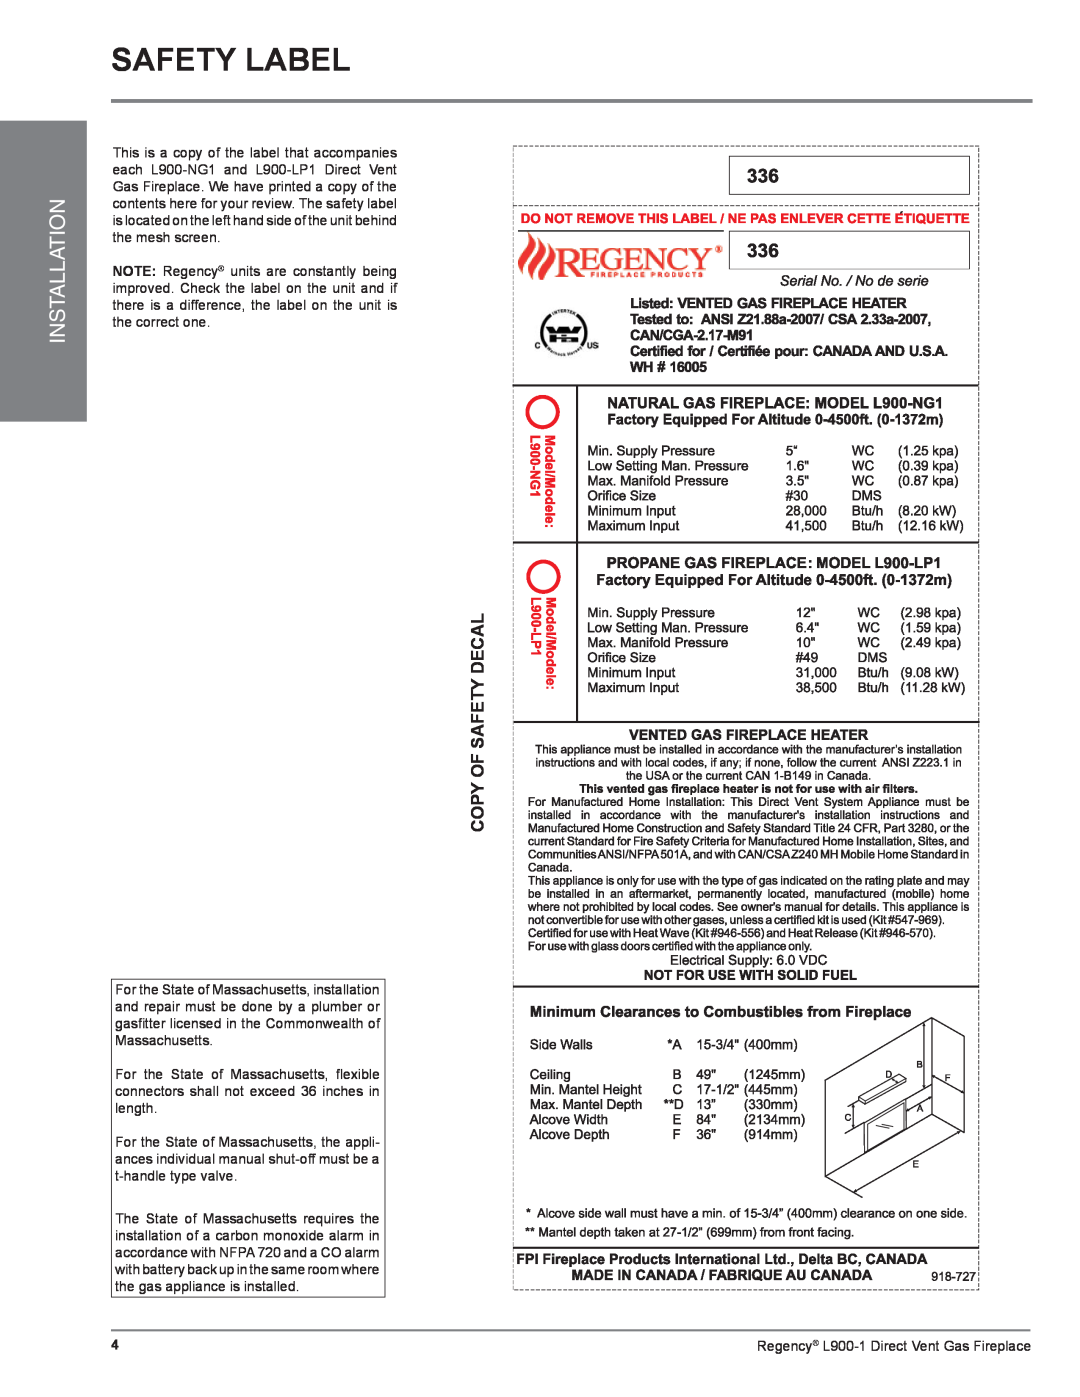 Regency L900-1 installation manual Safety Label, Installation 